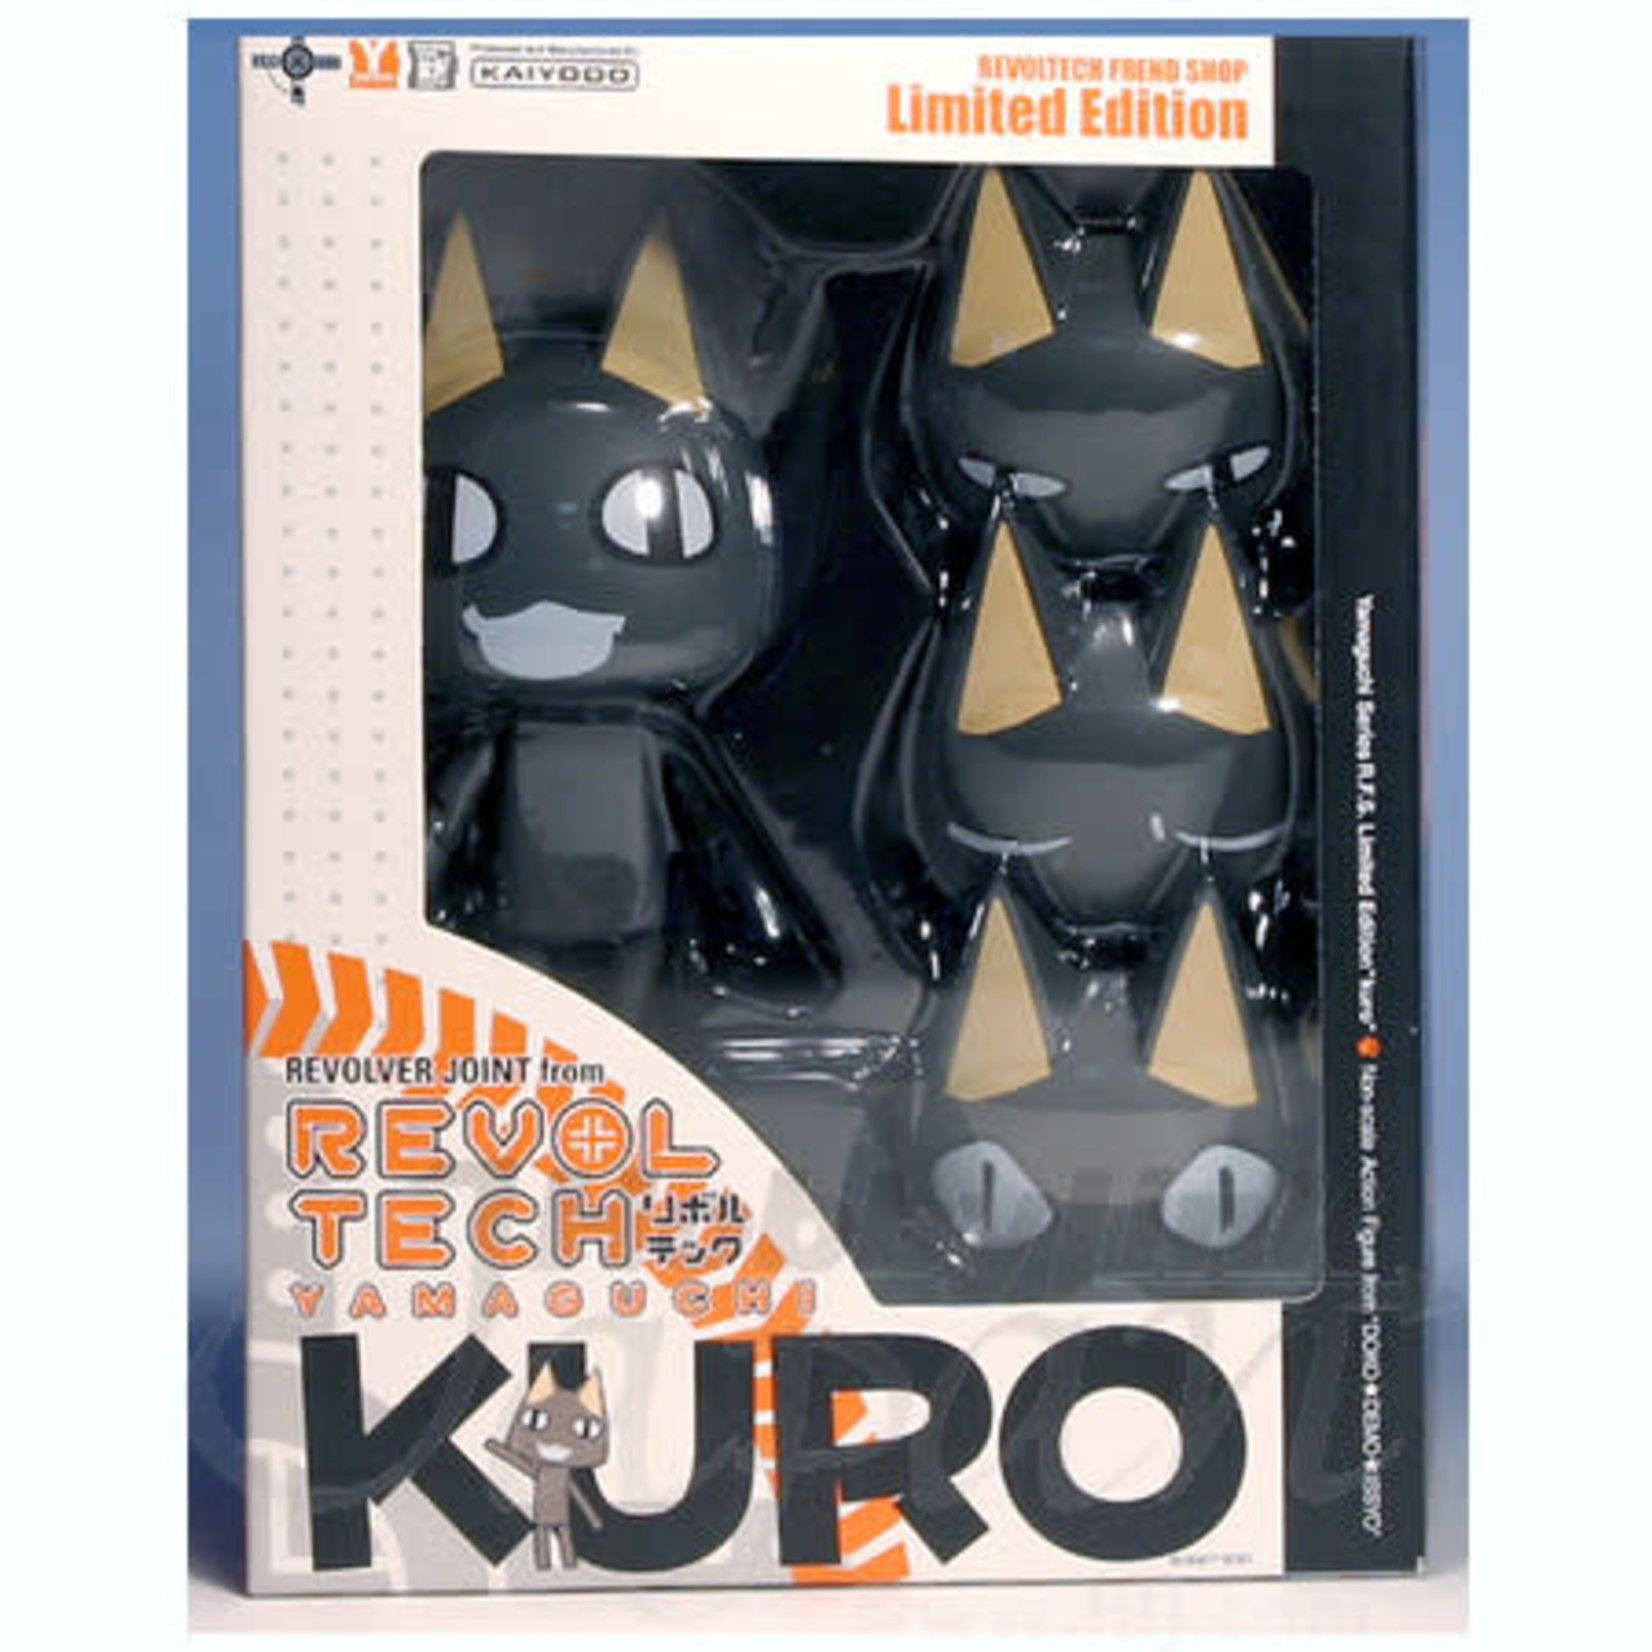 KAIYODO REVOLTECH LIMITED KURO BLACK CAT